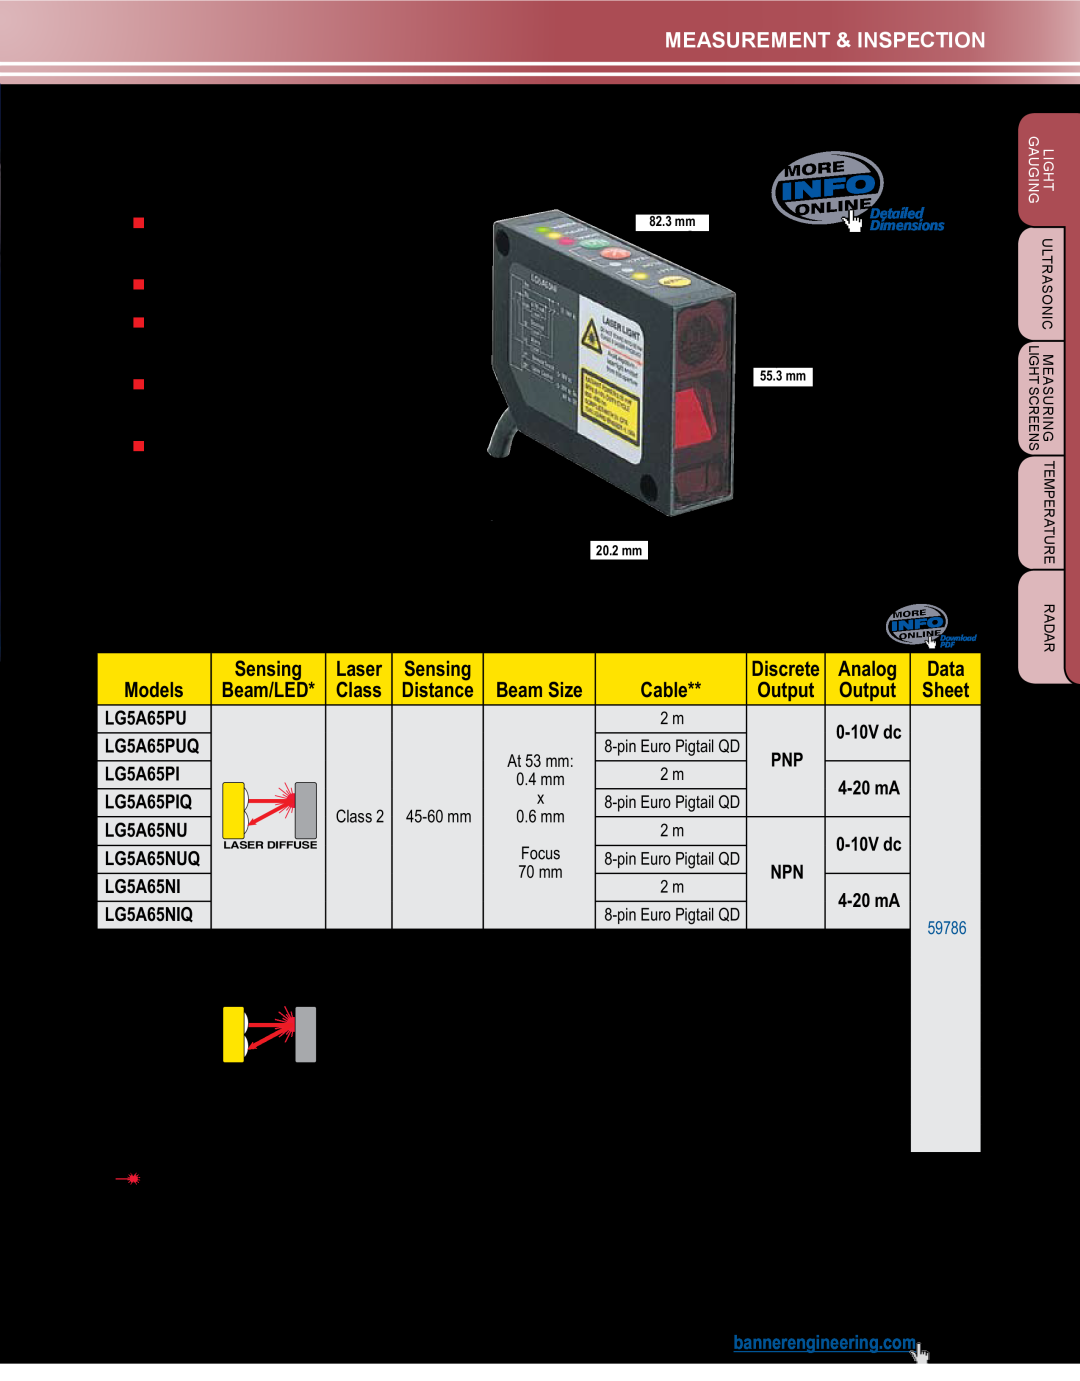 Banner L-GAGE LG Sensors, L-GAGE LG5, 12-30V dc, Push-button setup or remote configuration, Measurement & Inspection 